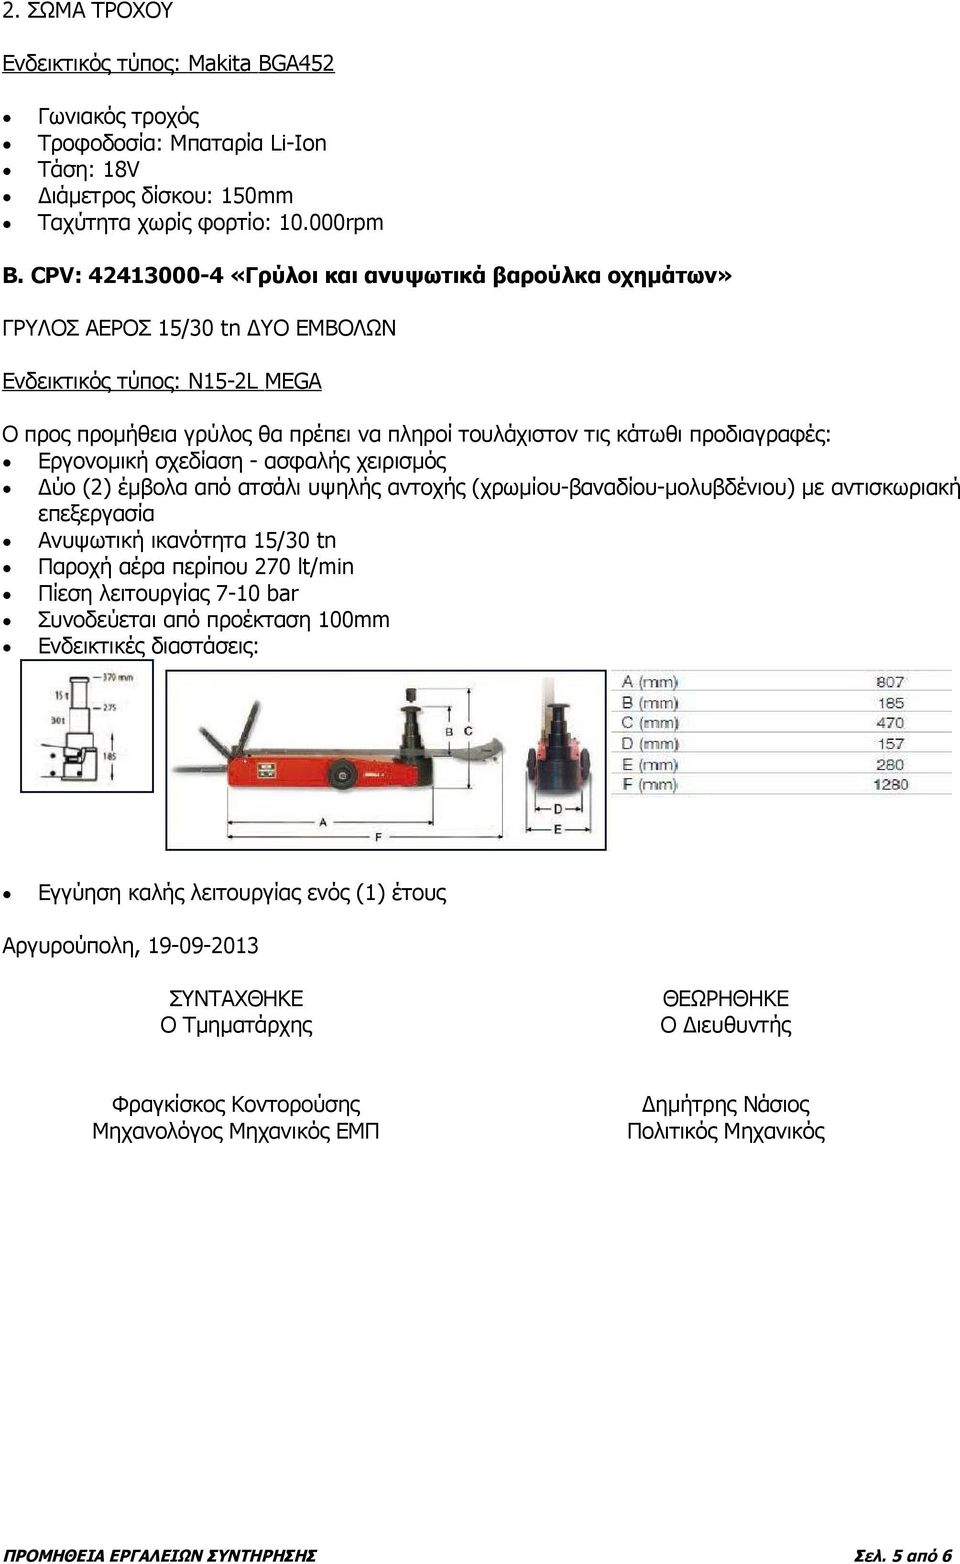 προδιαγραφές: Εργονομική σχεδίαση - ασφαλής χειρισμός Δύο (2) έμβολα από ατσάλι υψηλής αντοχής (χρωμίου-βαναδίου-μολυβδένιου) με αντισκωριακή επεξεργασία Ανυψωτική ικανότητα 15/30 tn Παροχή αέρα